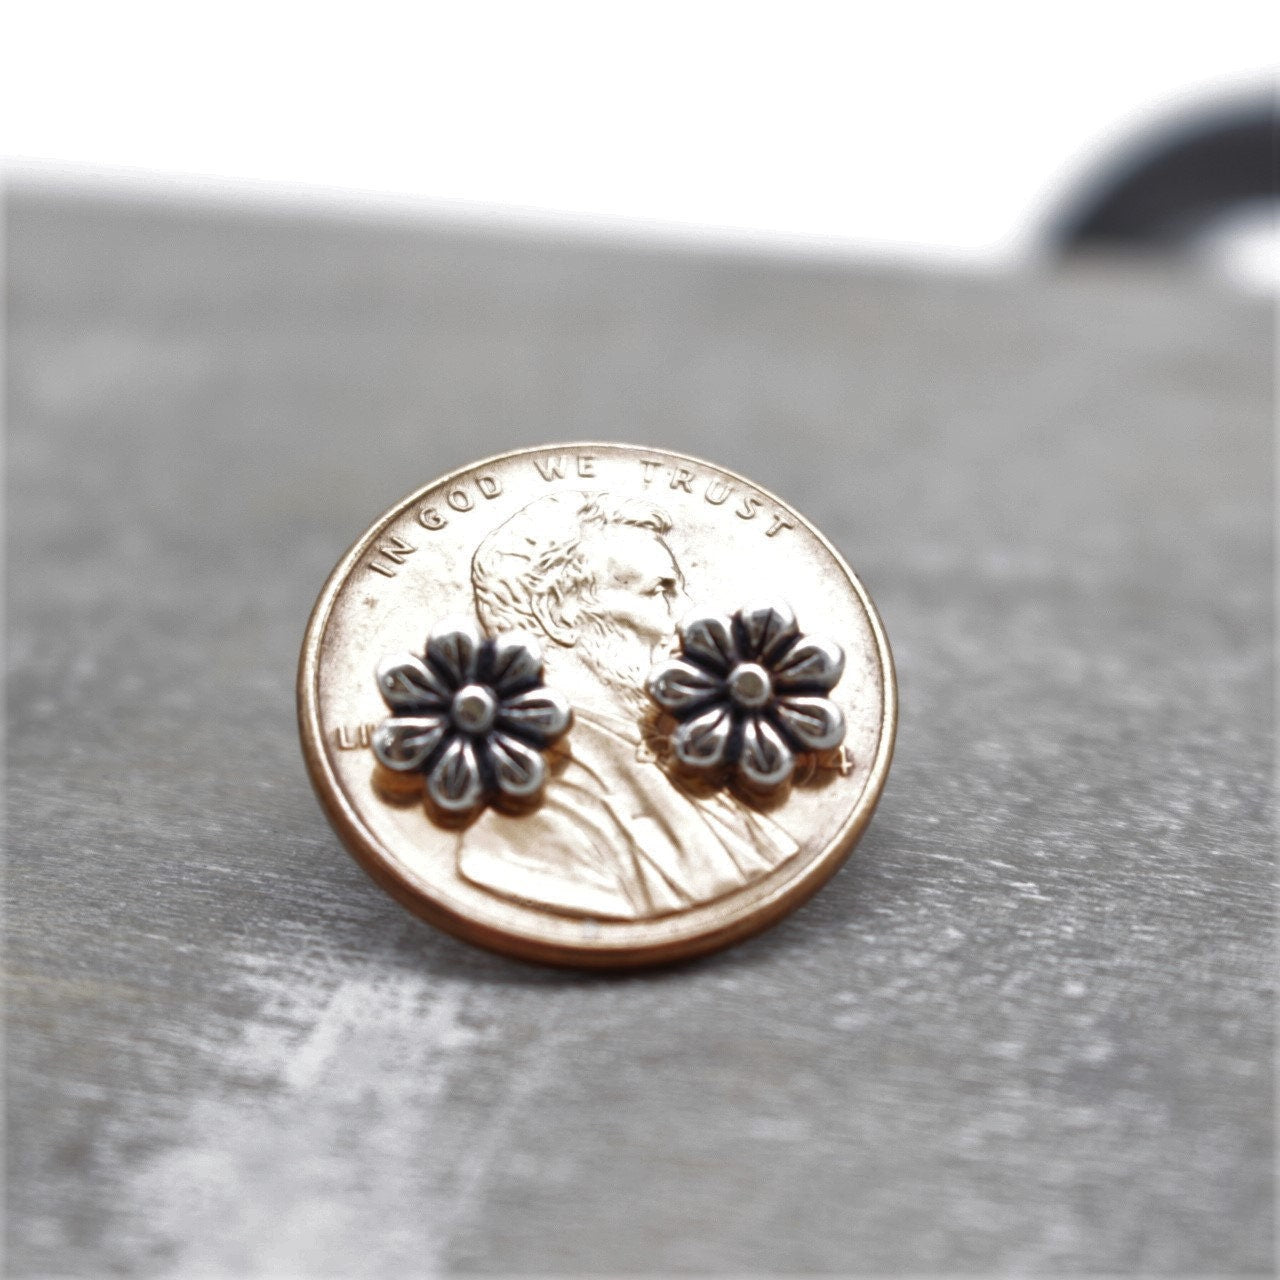 Tiny Daisy Flower Earrings - Sterling Silver Stud Earrings - Small Stud Earrings - Gift for Her - Antique - Dainty